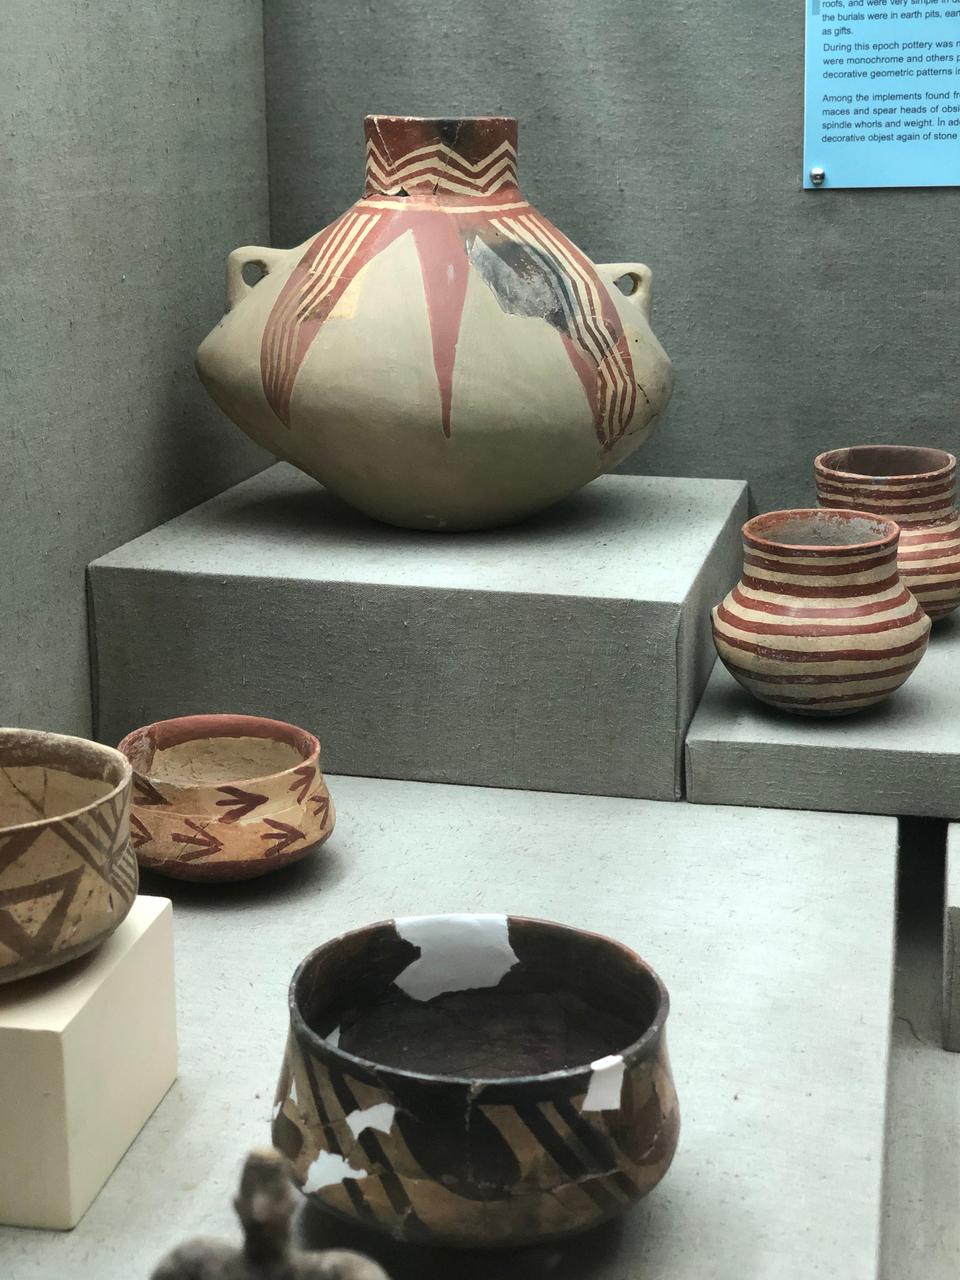 يضمّ متحف أنطاليا قطع فخار نادرة تعود إلى العصر اليوناني مثل الأواني والقوارير القديمة 